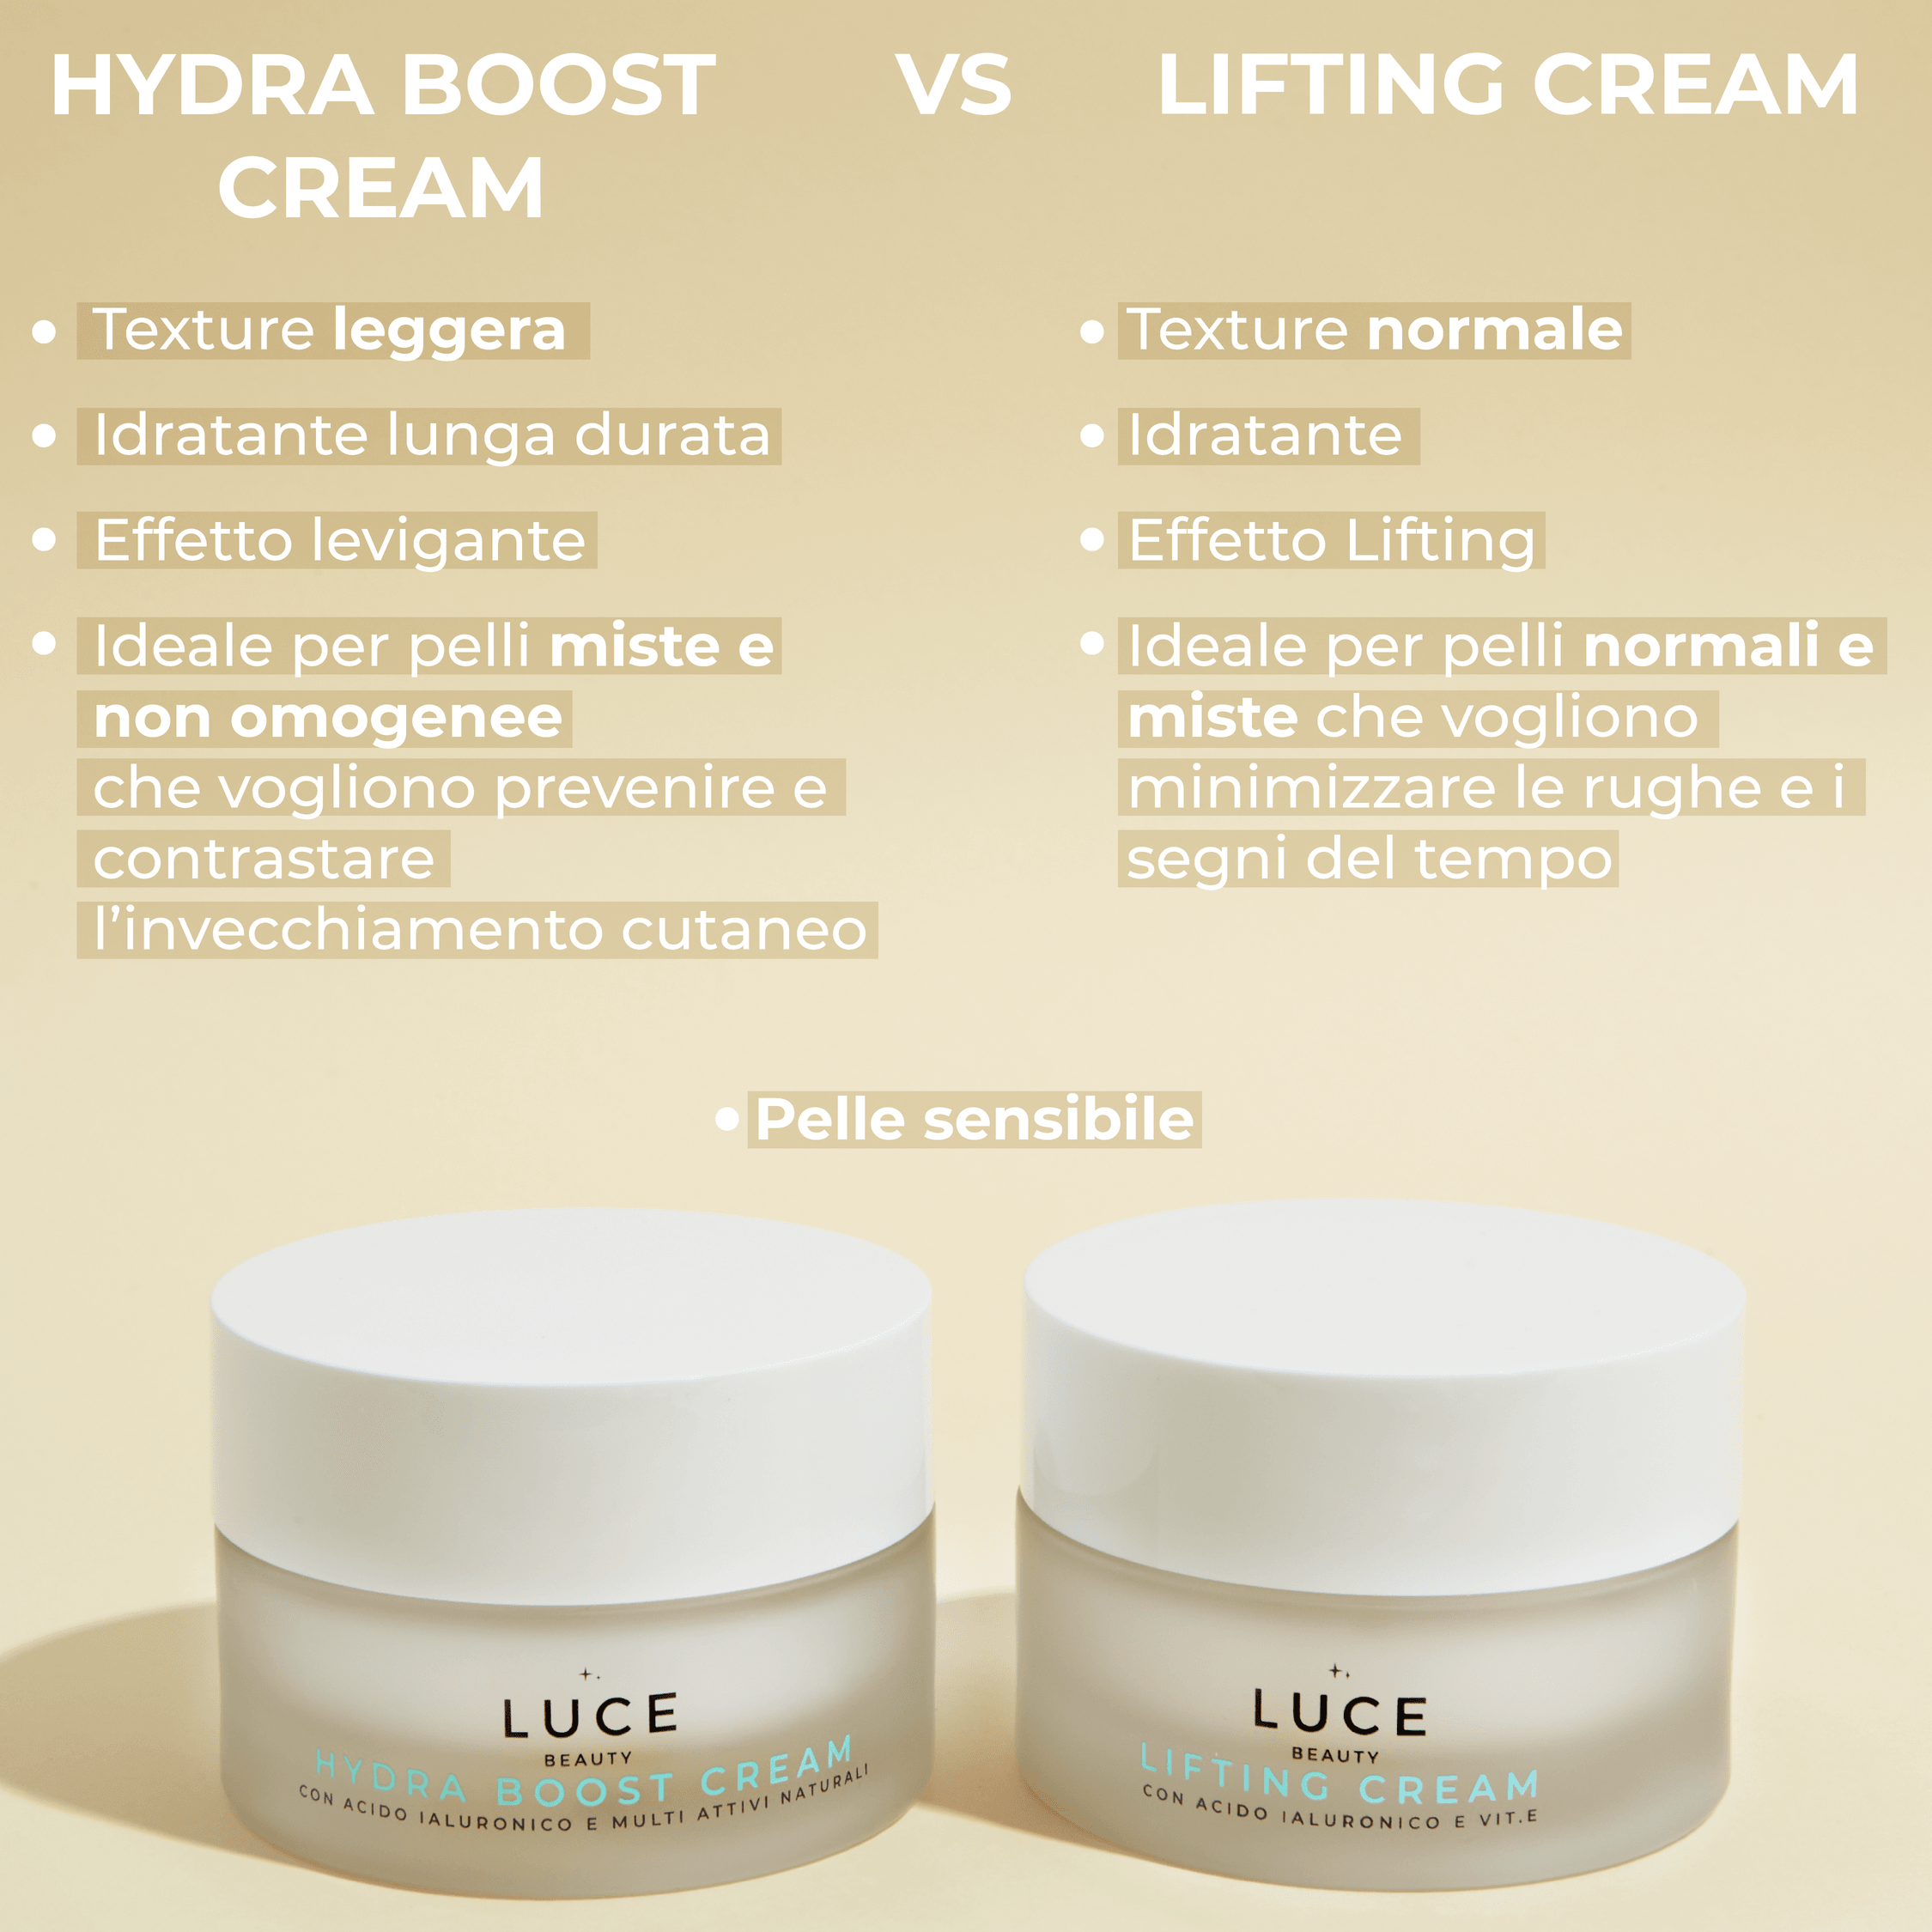 Hydraboost Cream - Creme idratanti - confronto Lifting Cream - Luce Beauty By Alessia Marcuzzi